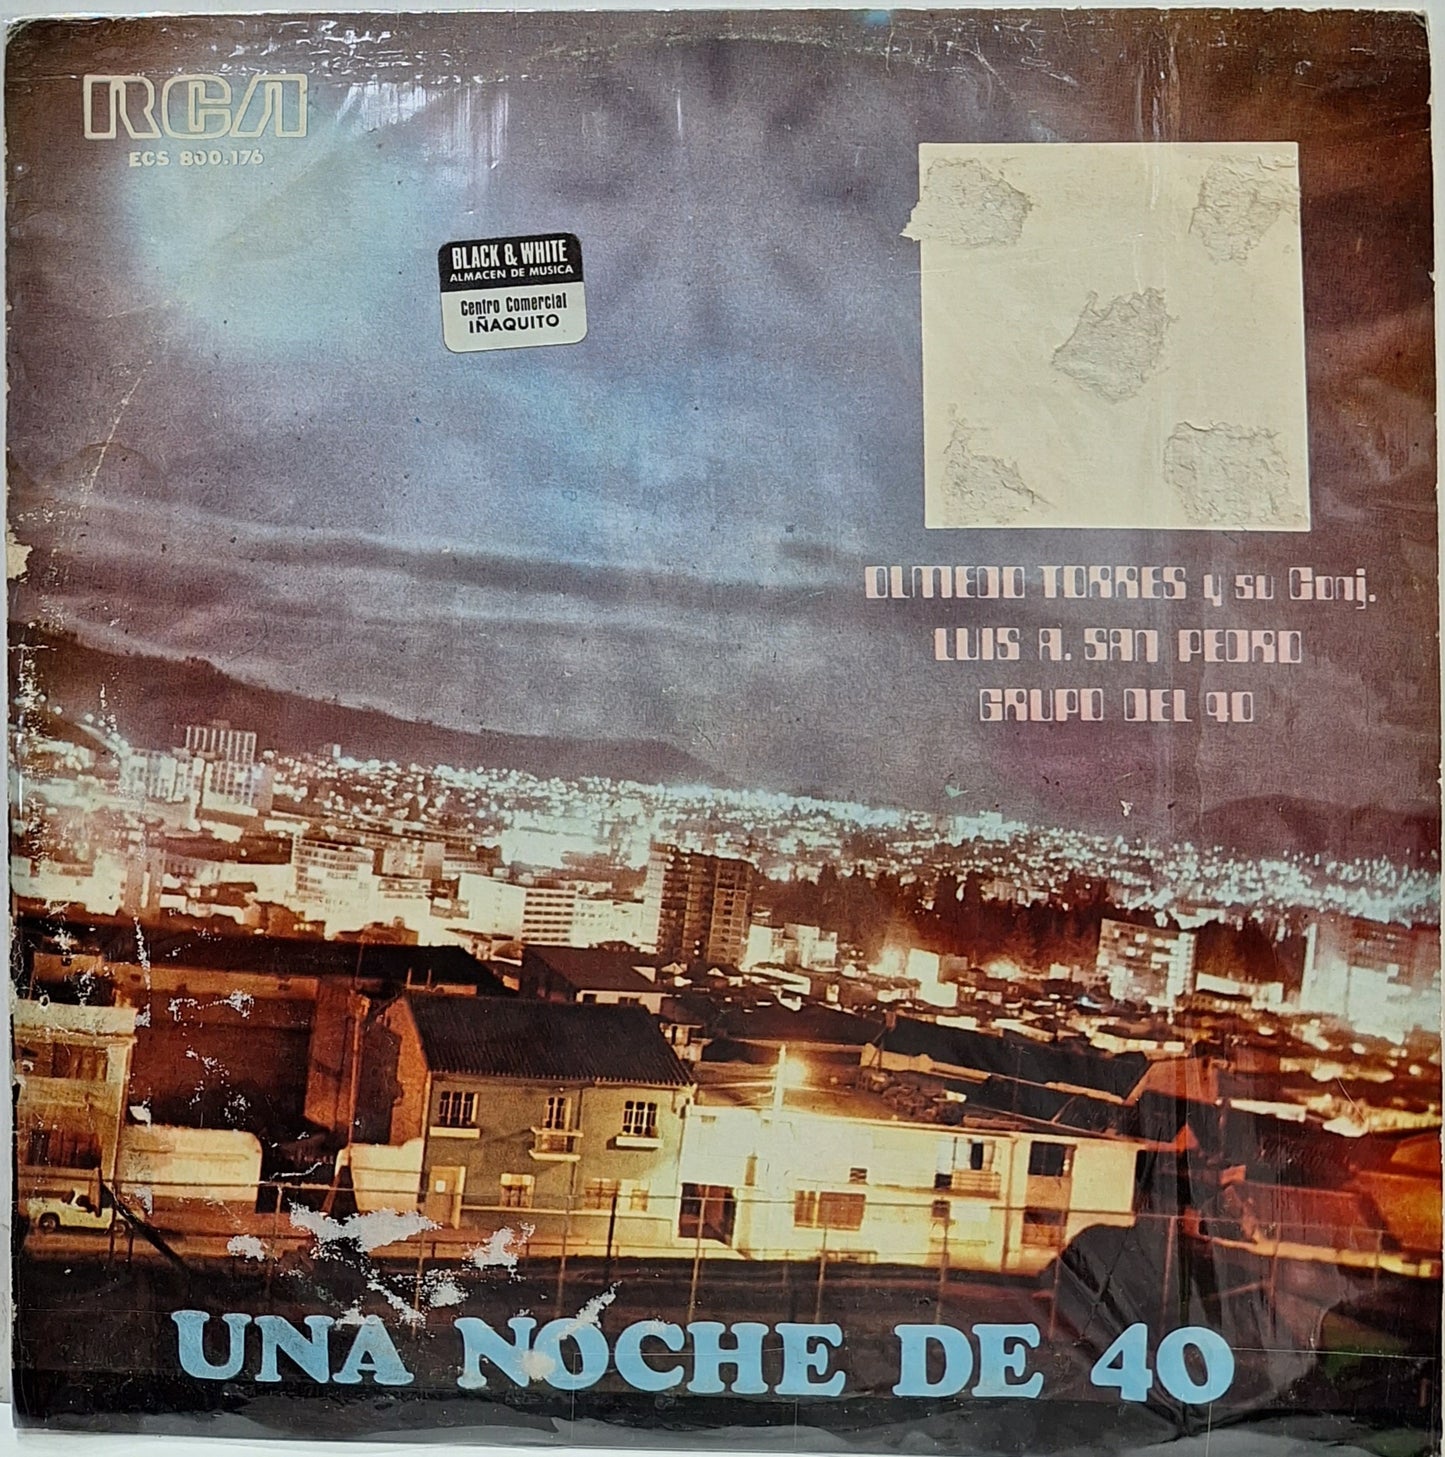 OLMEDO TORRES - UNA NOCHE DE 40 LP